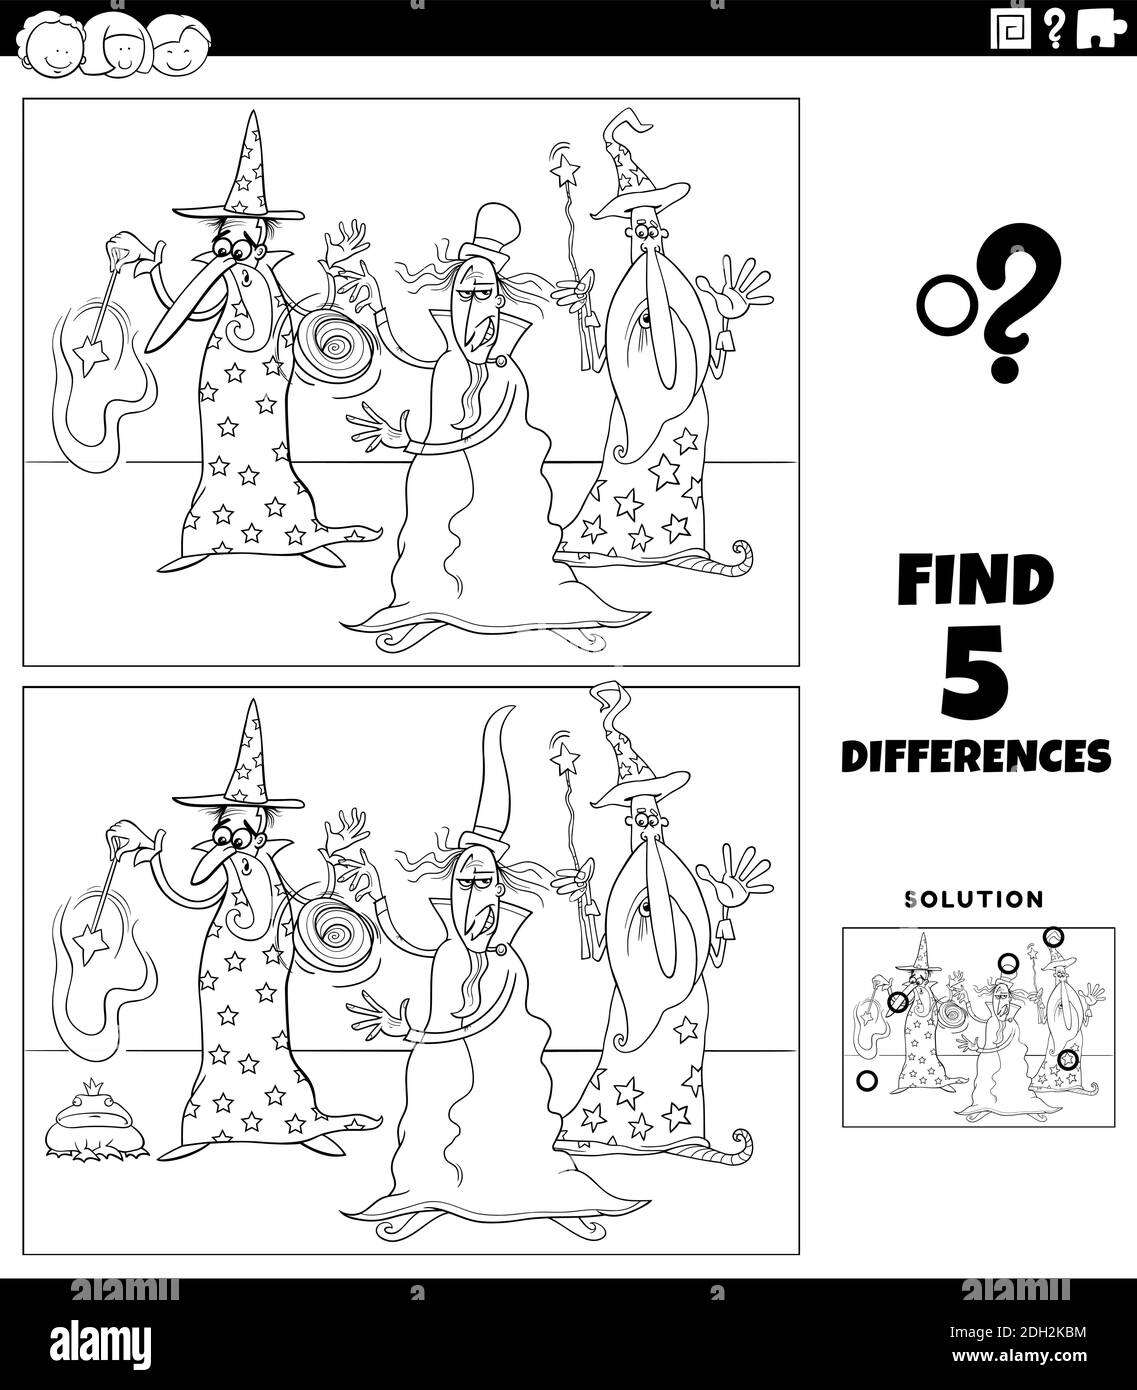 Cartoni animati in bianco e nero illustrazione di trovare le differenze tra immagini gioco educativo per bambini con tre personaggi fantasy maghi c Illustrazione Vettoriale